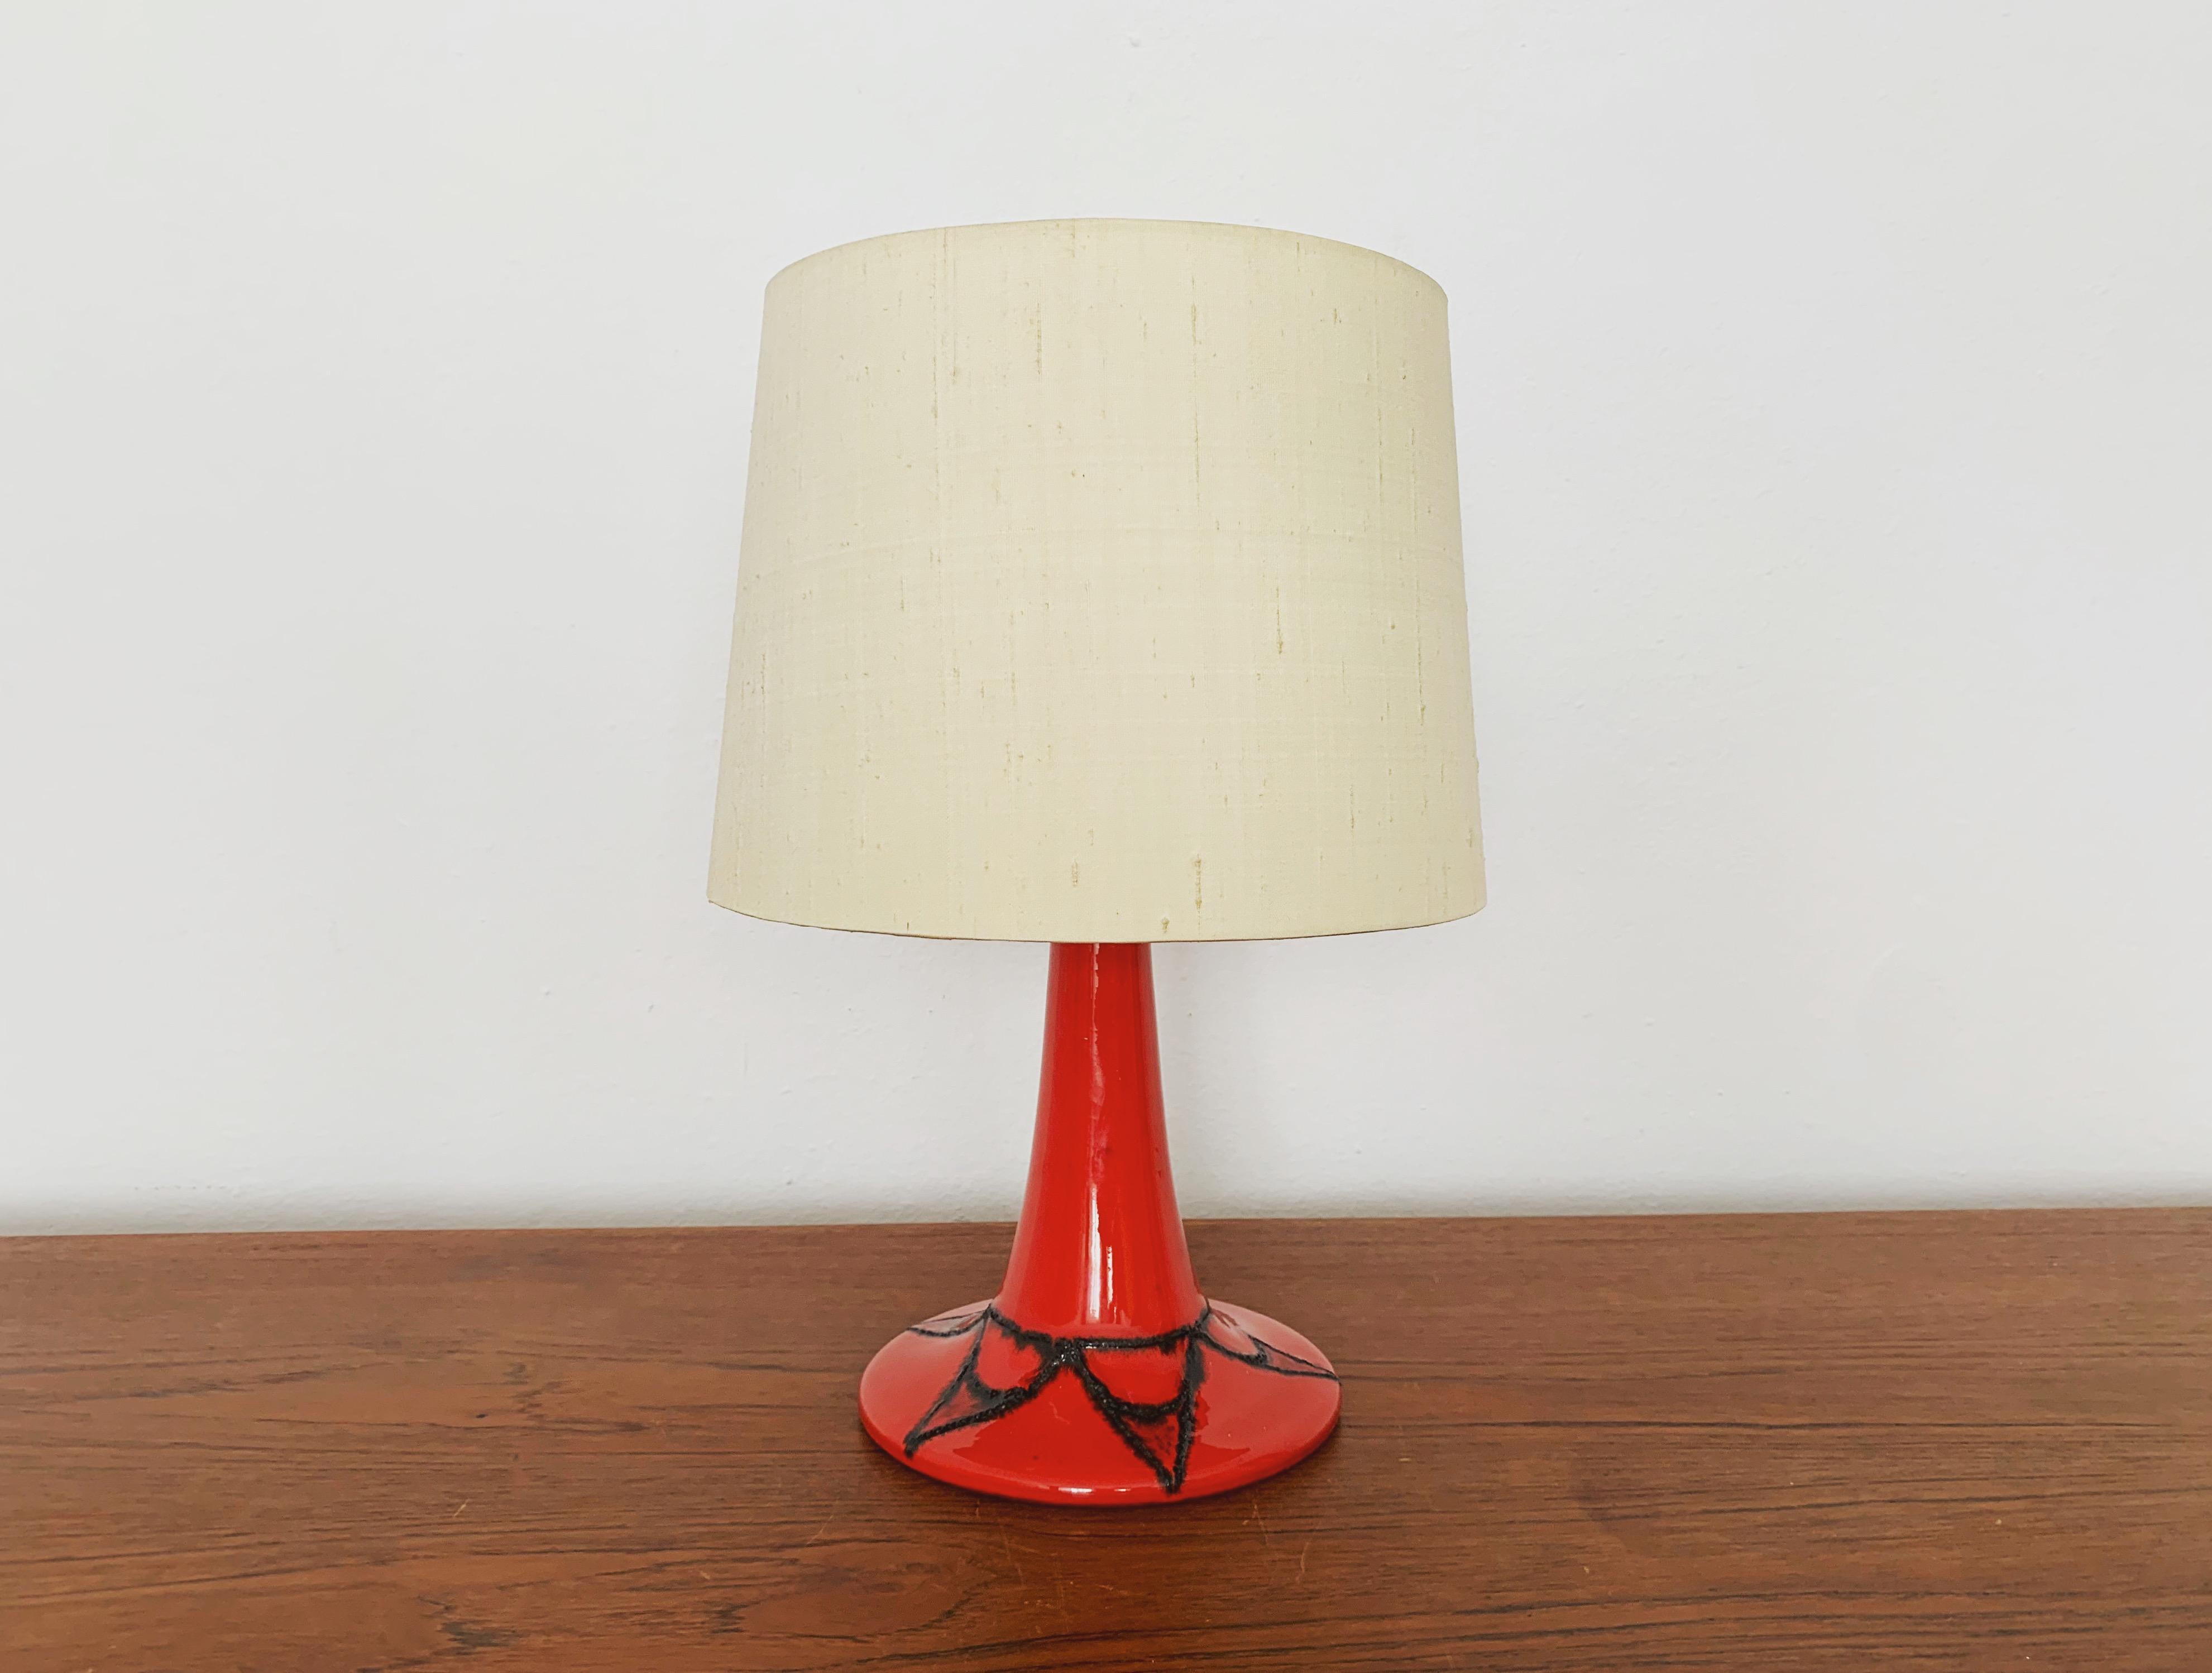 Schöne Tischlampe aus den 1960er Jahren.
Die Lampe hat eine tolle Struktur und ist wunderschön gestaltet.
Sehr hohe Verarbeitungsqualität und fantastisches Design.

Bedingung:

Sehr guter Vintage-Zustand mit minimalen altersentsprechenden